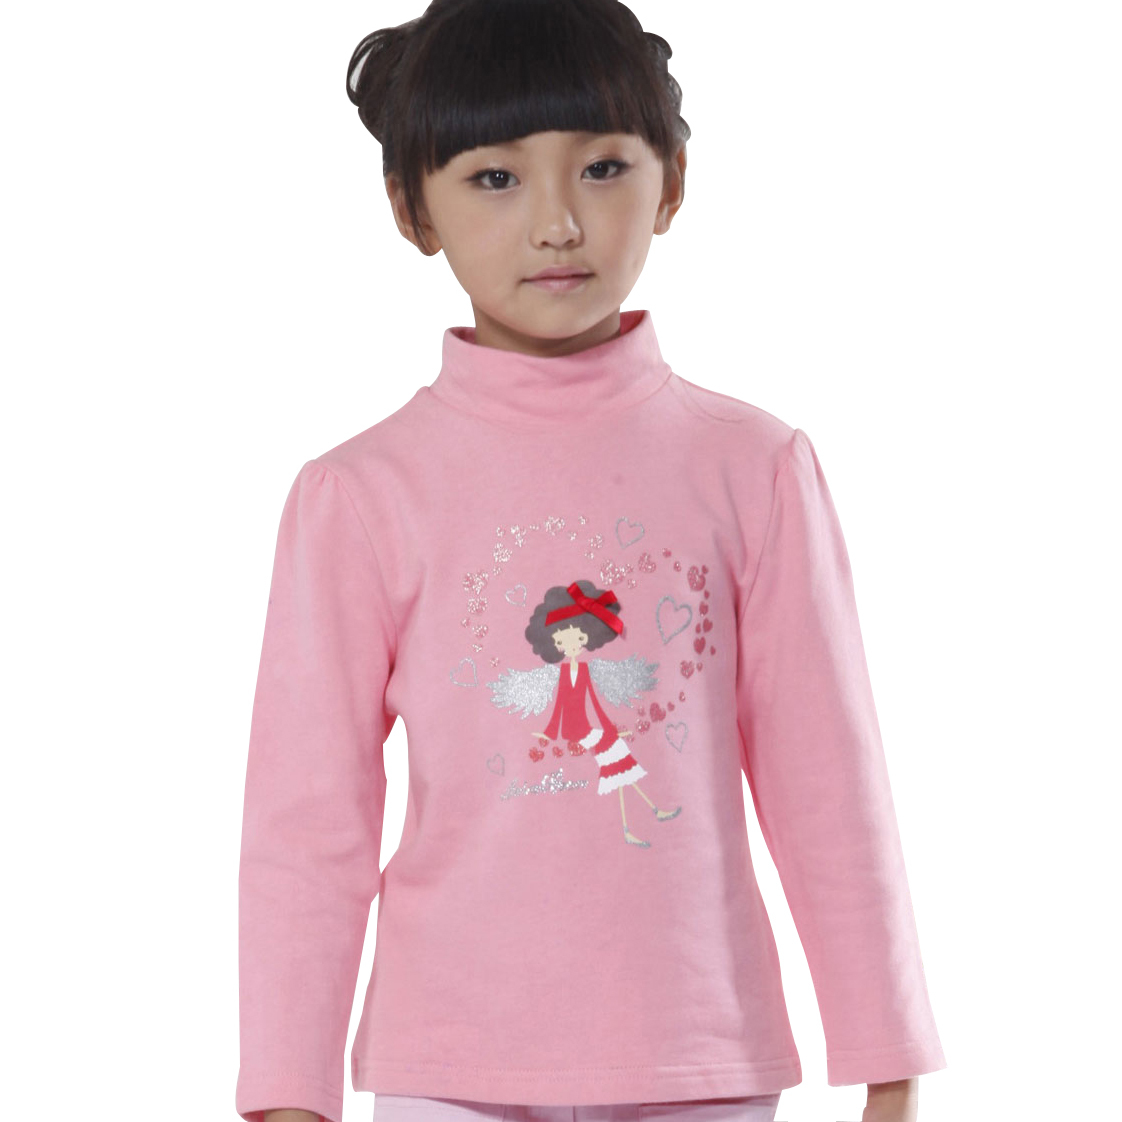 Children's clothing big boy child female child long design female basic sweater 2012 free shipping